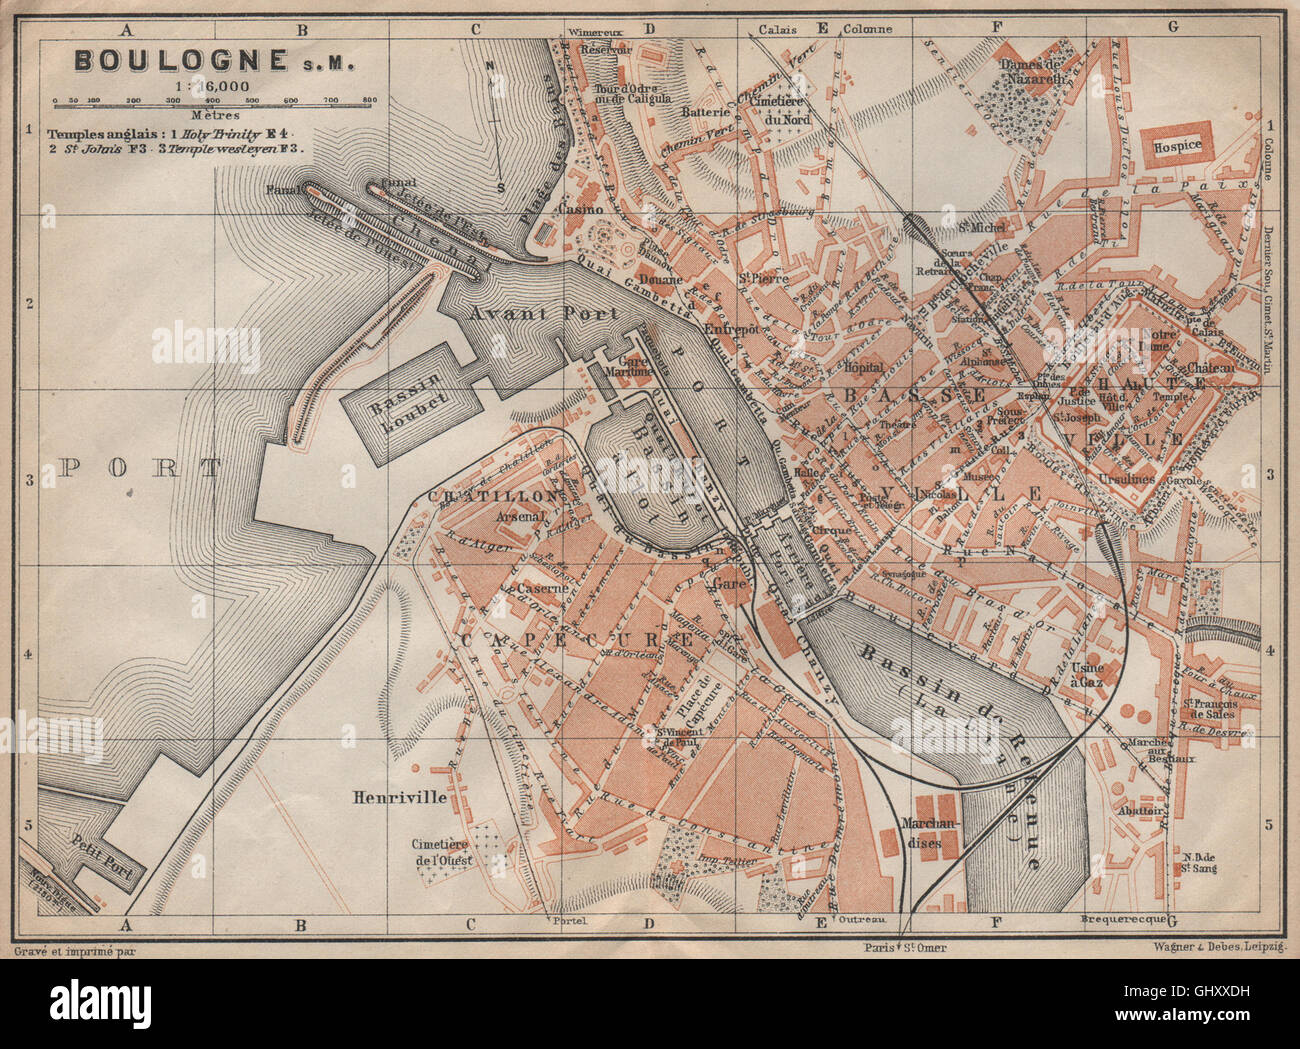 BOULOGNE-SUR-MER town city plan de la ville. Pas-de-Calais carte, 1909 old map Stock Photo